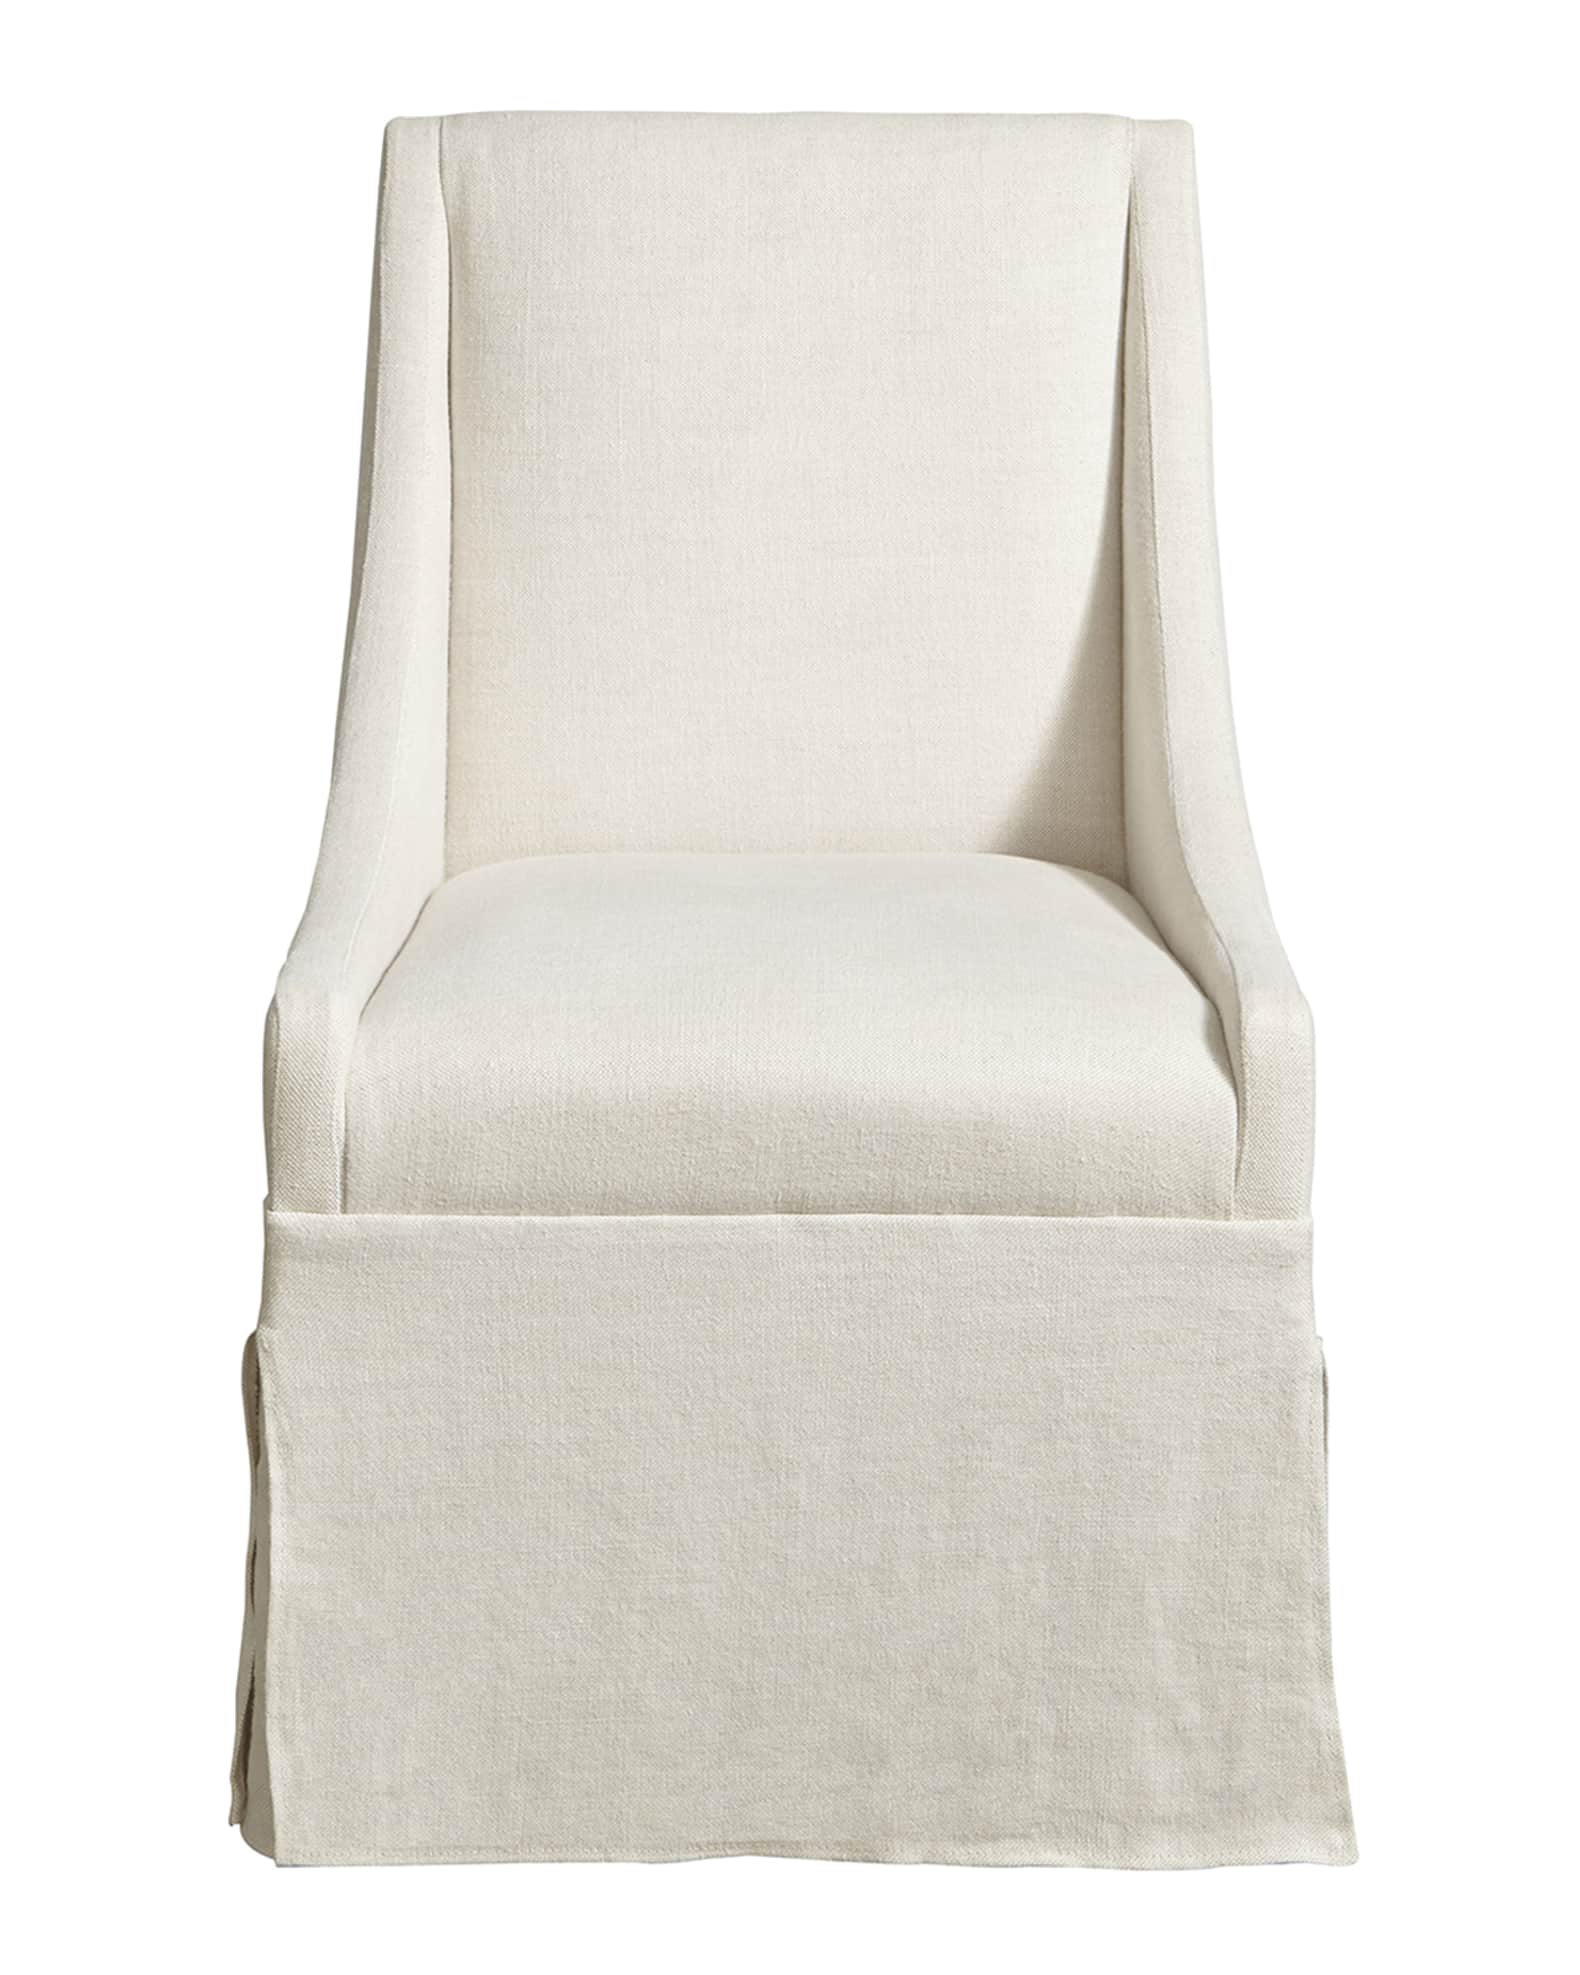 Universal Furniture Tramezza Host Chair